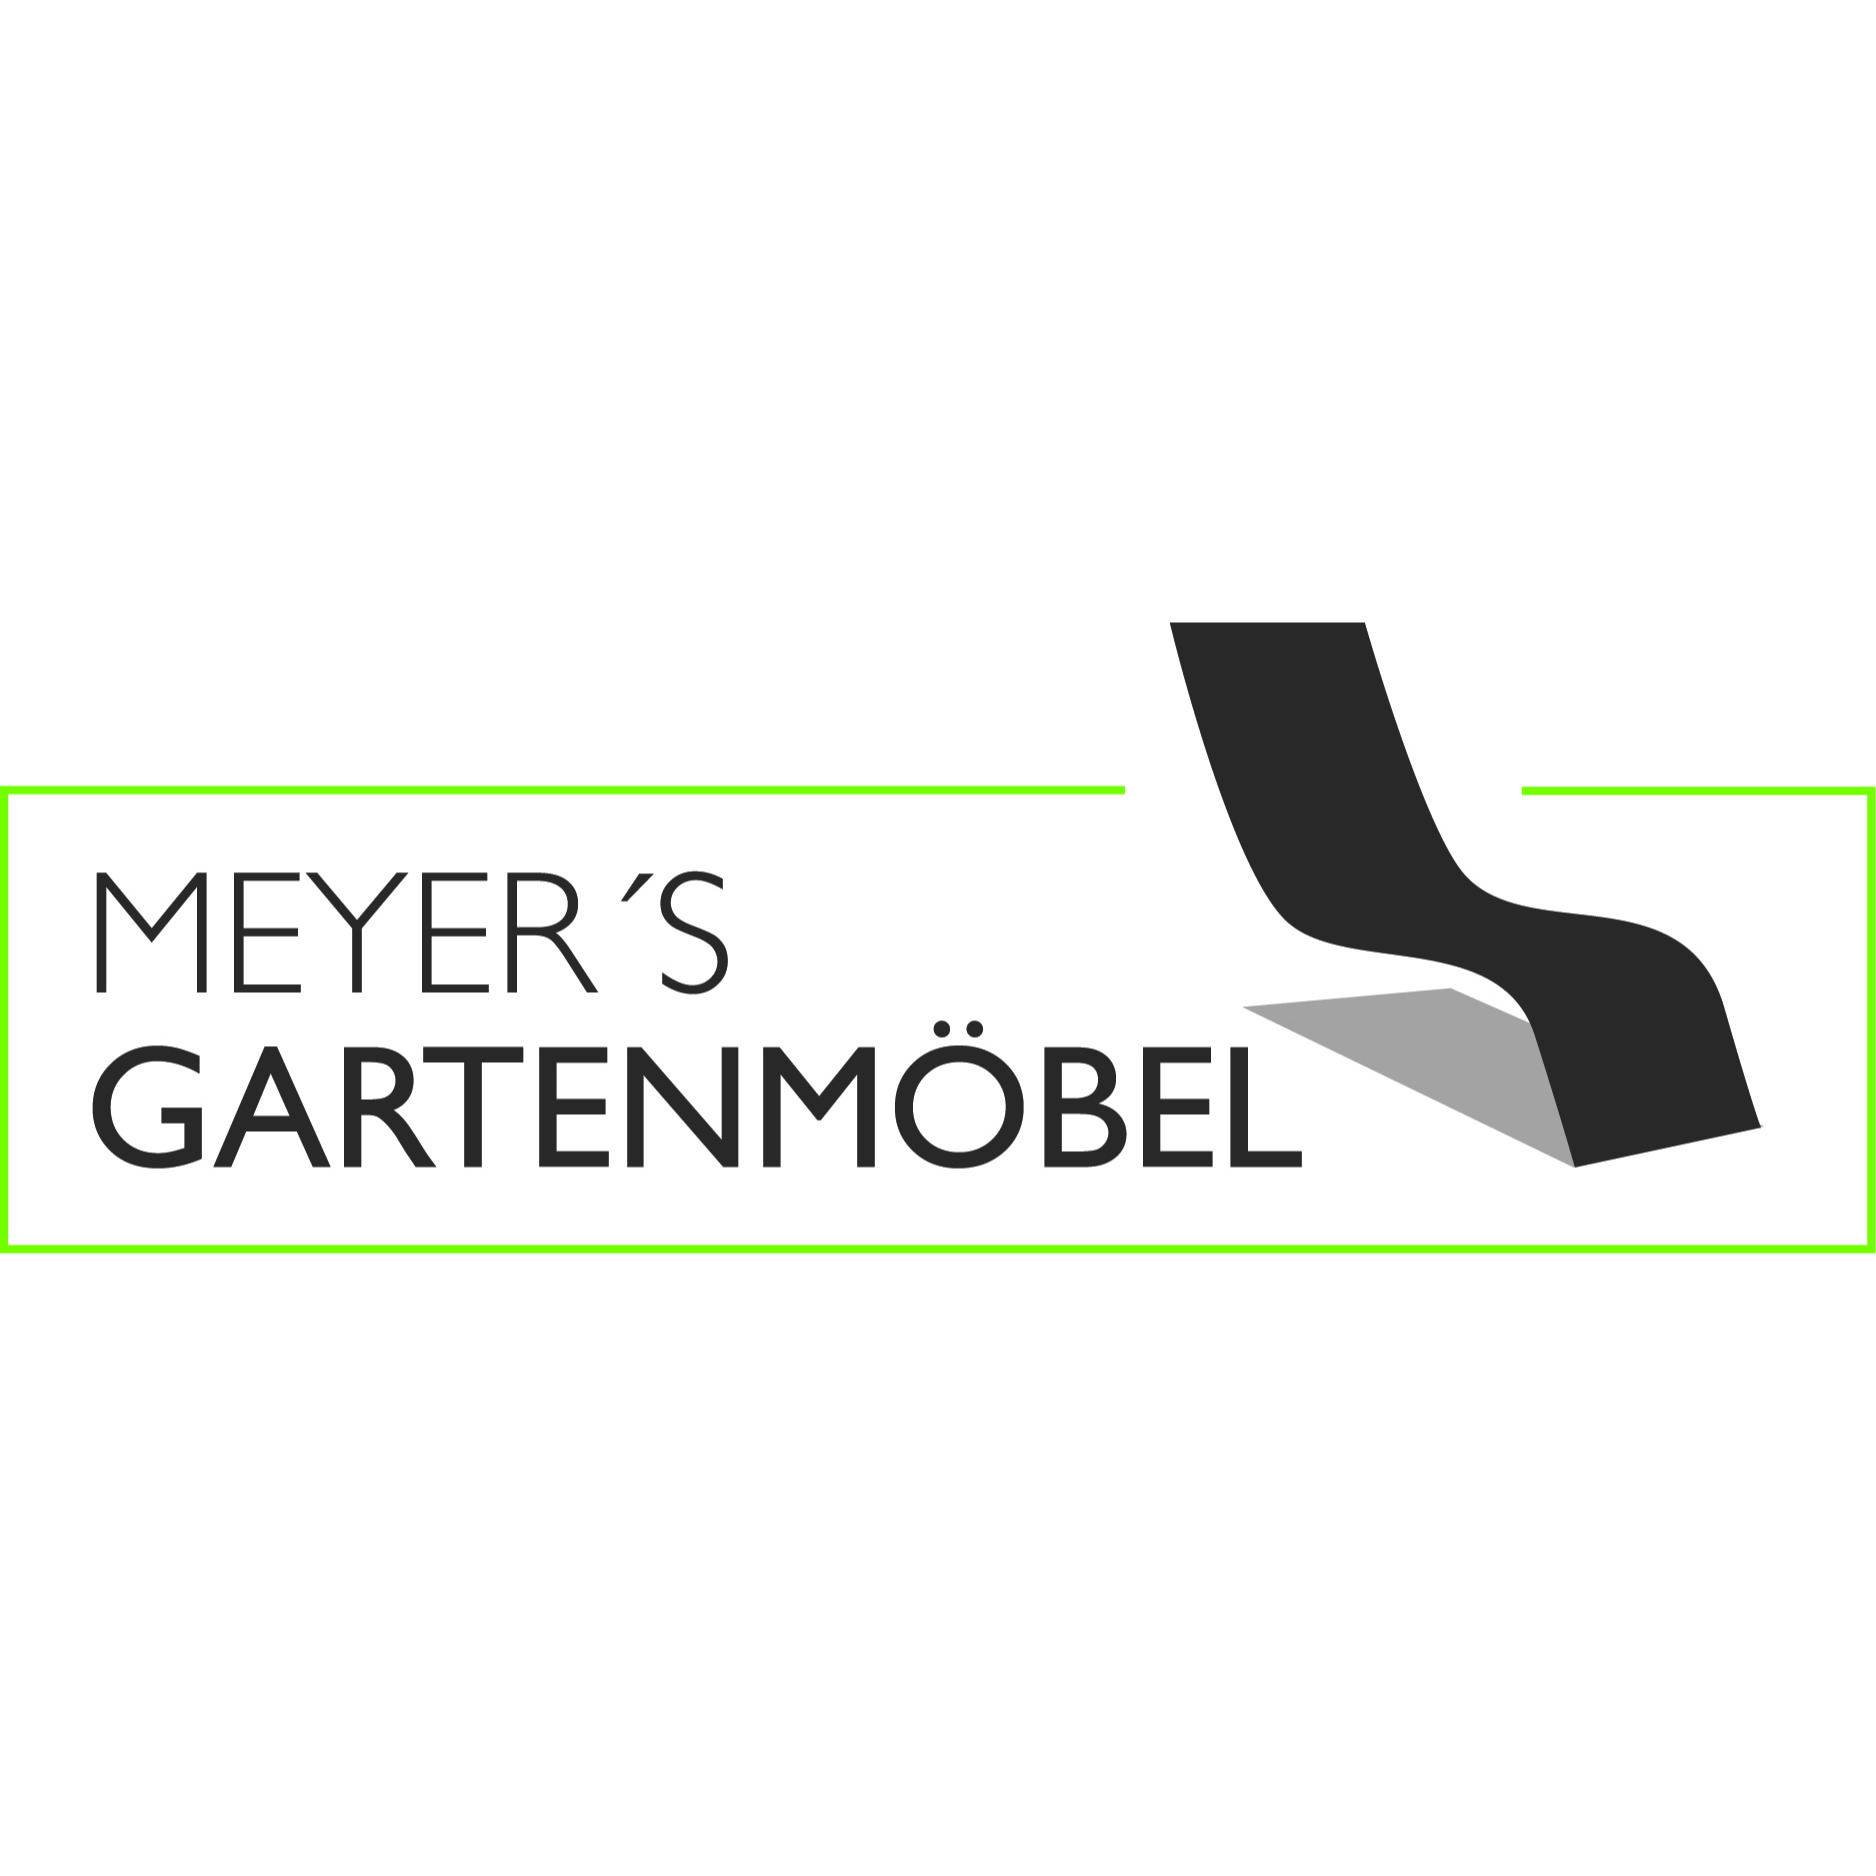 Gartenmöbel-Center Meyer GmbH & Co. KG in Münster - Logo